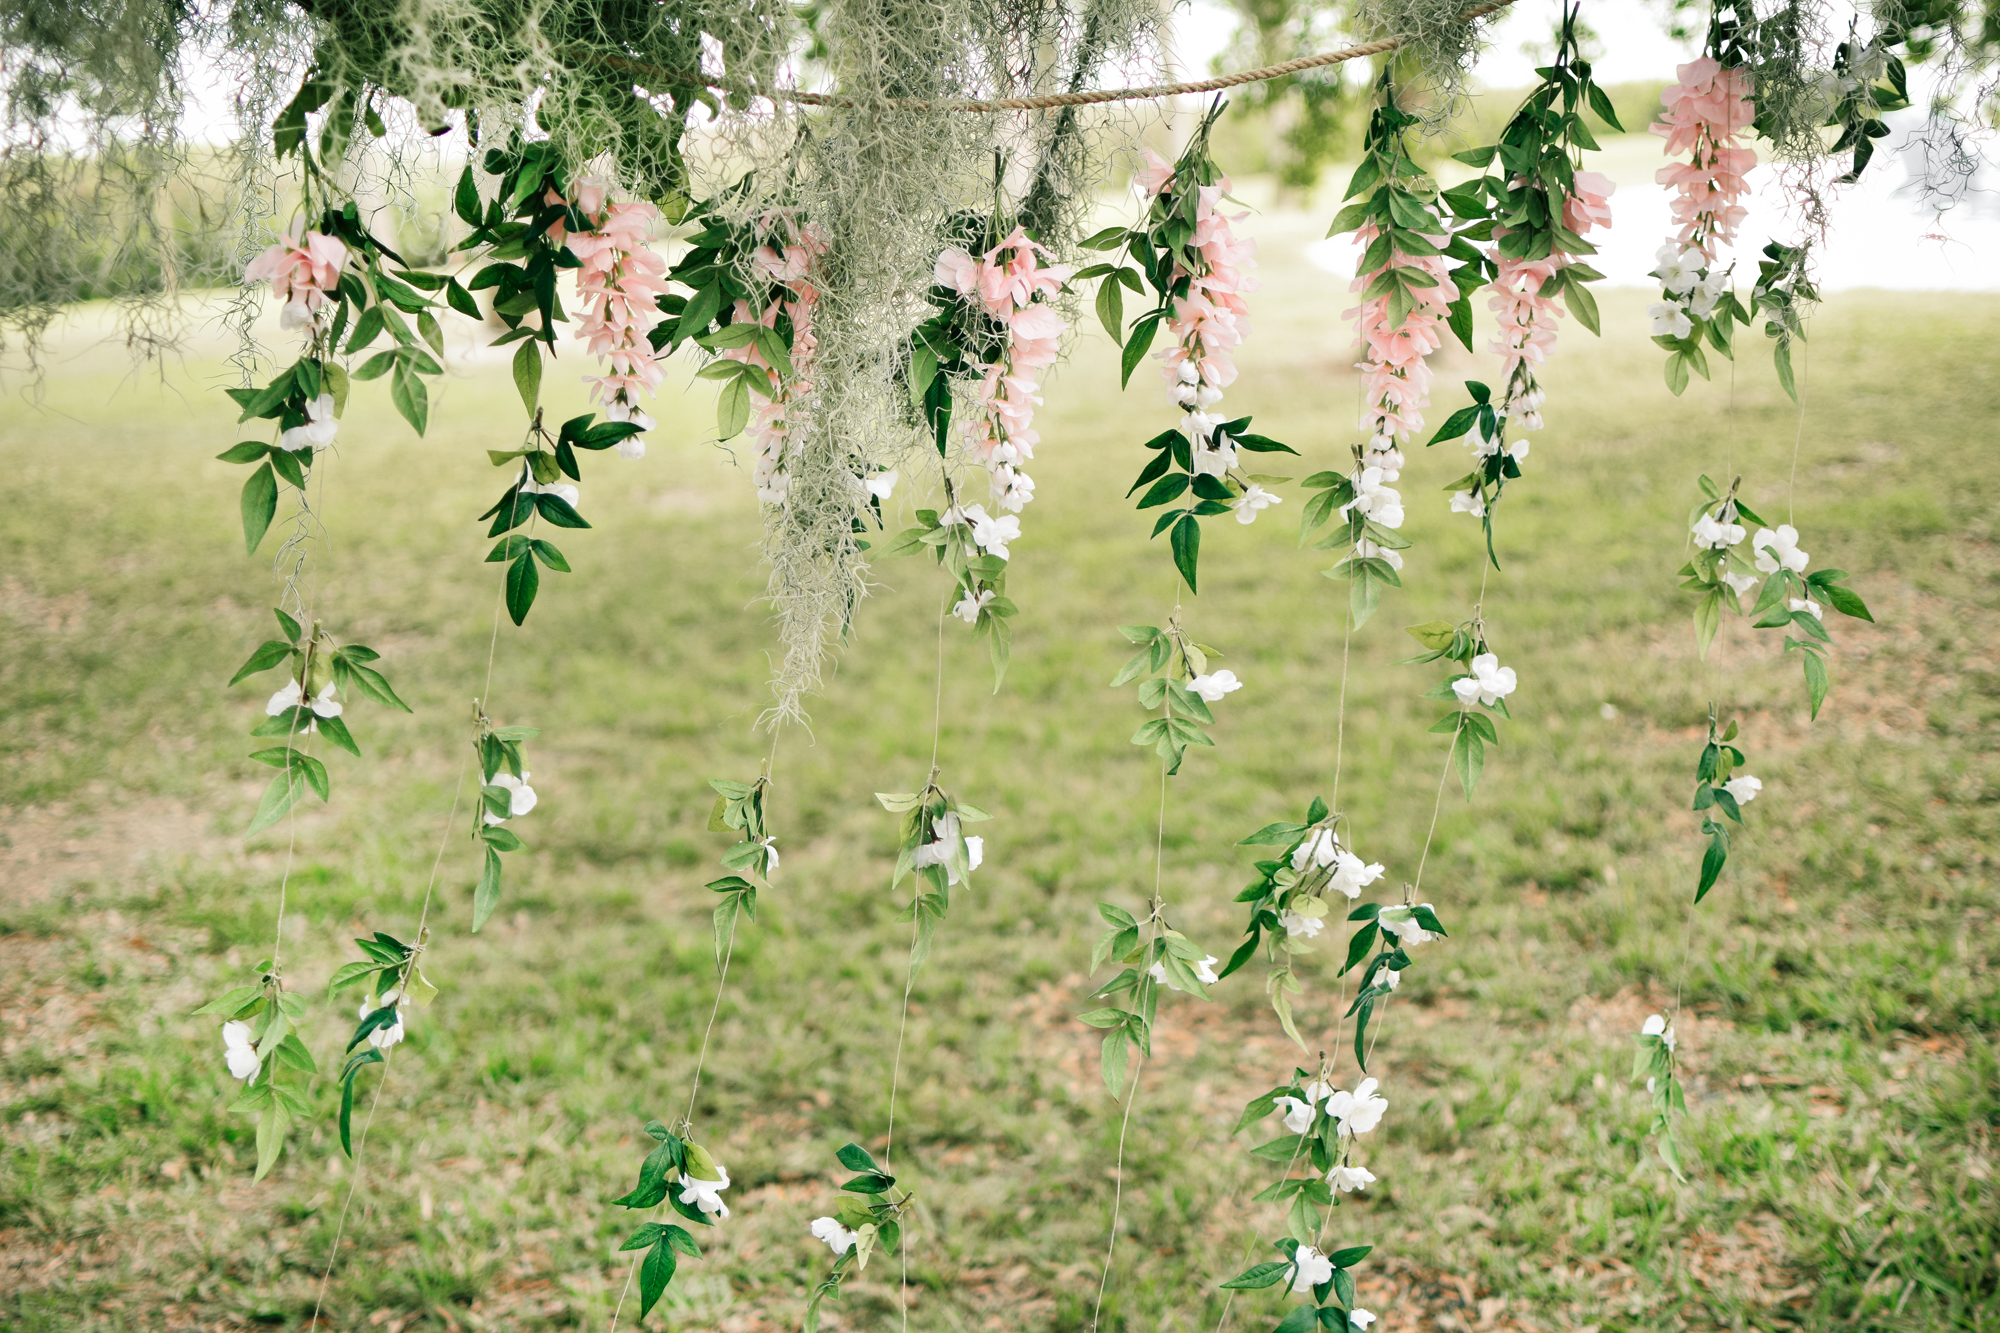 DIY Garden Floral Bridal Shower Backdrop - Beacon Lane